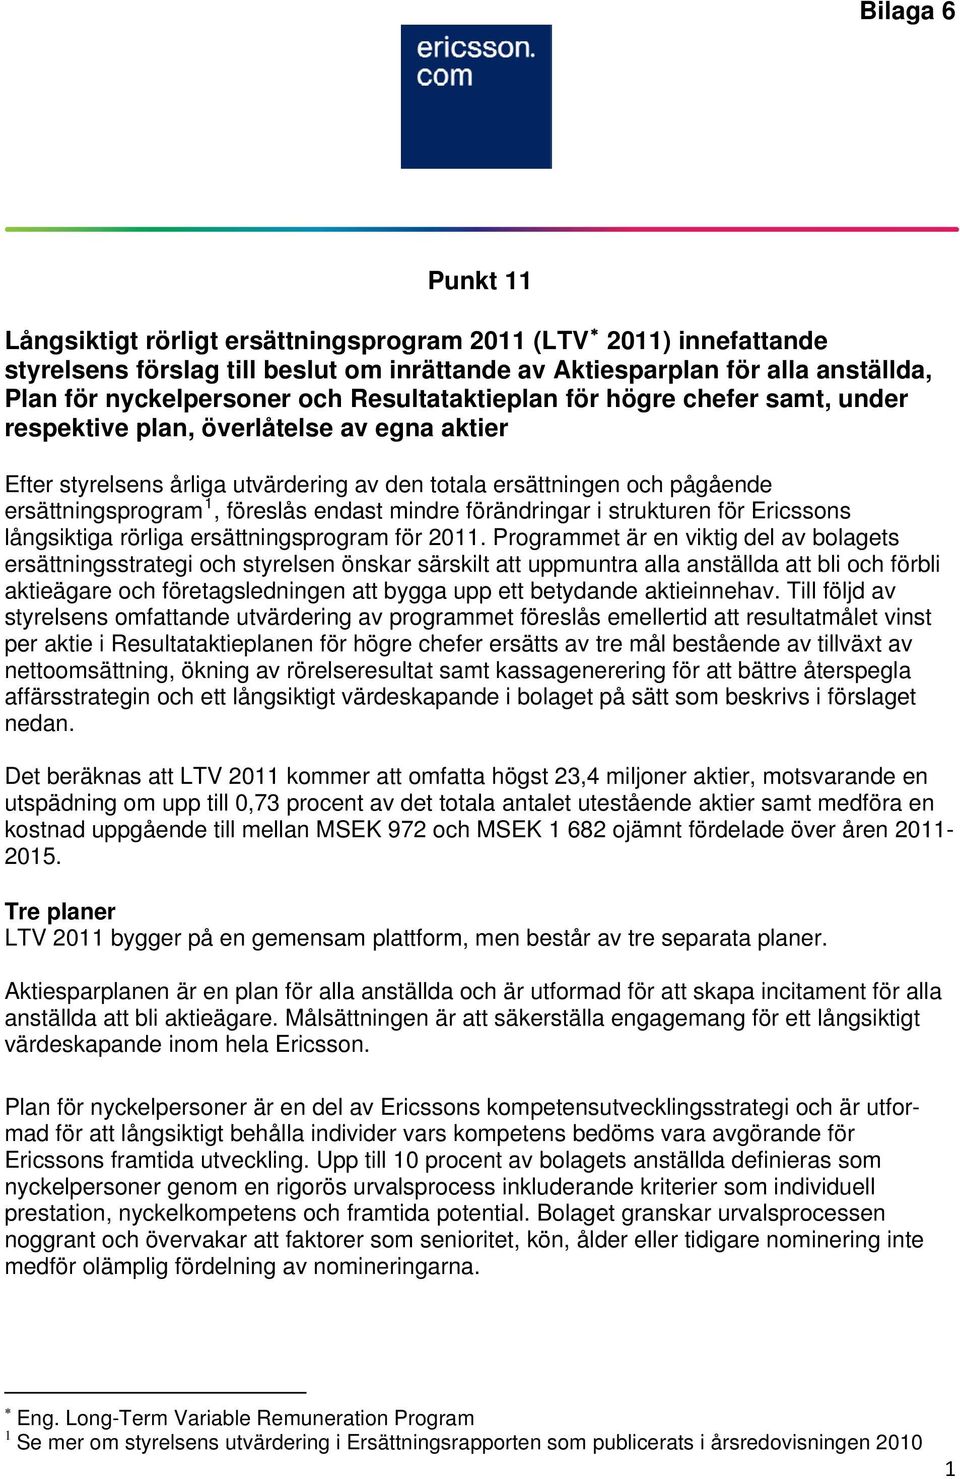 endast mindre förändringar i strukturen för Ericssons långsiktiga rörliga ersättningsprogram för 2011.